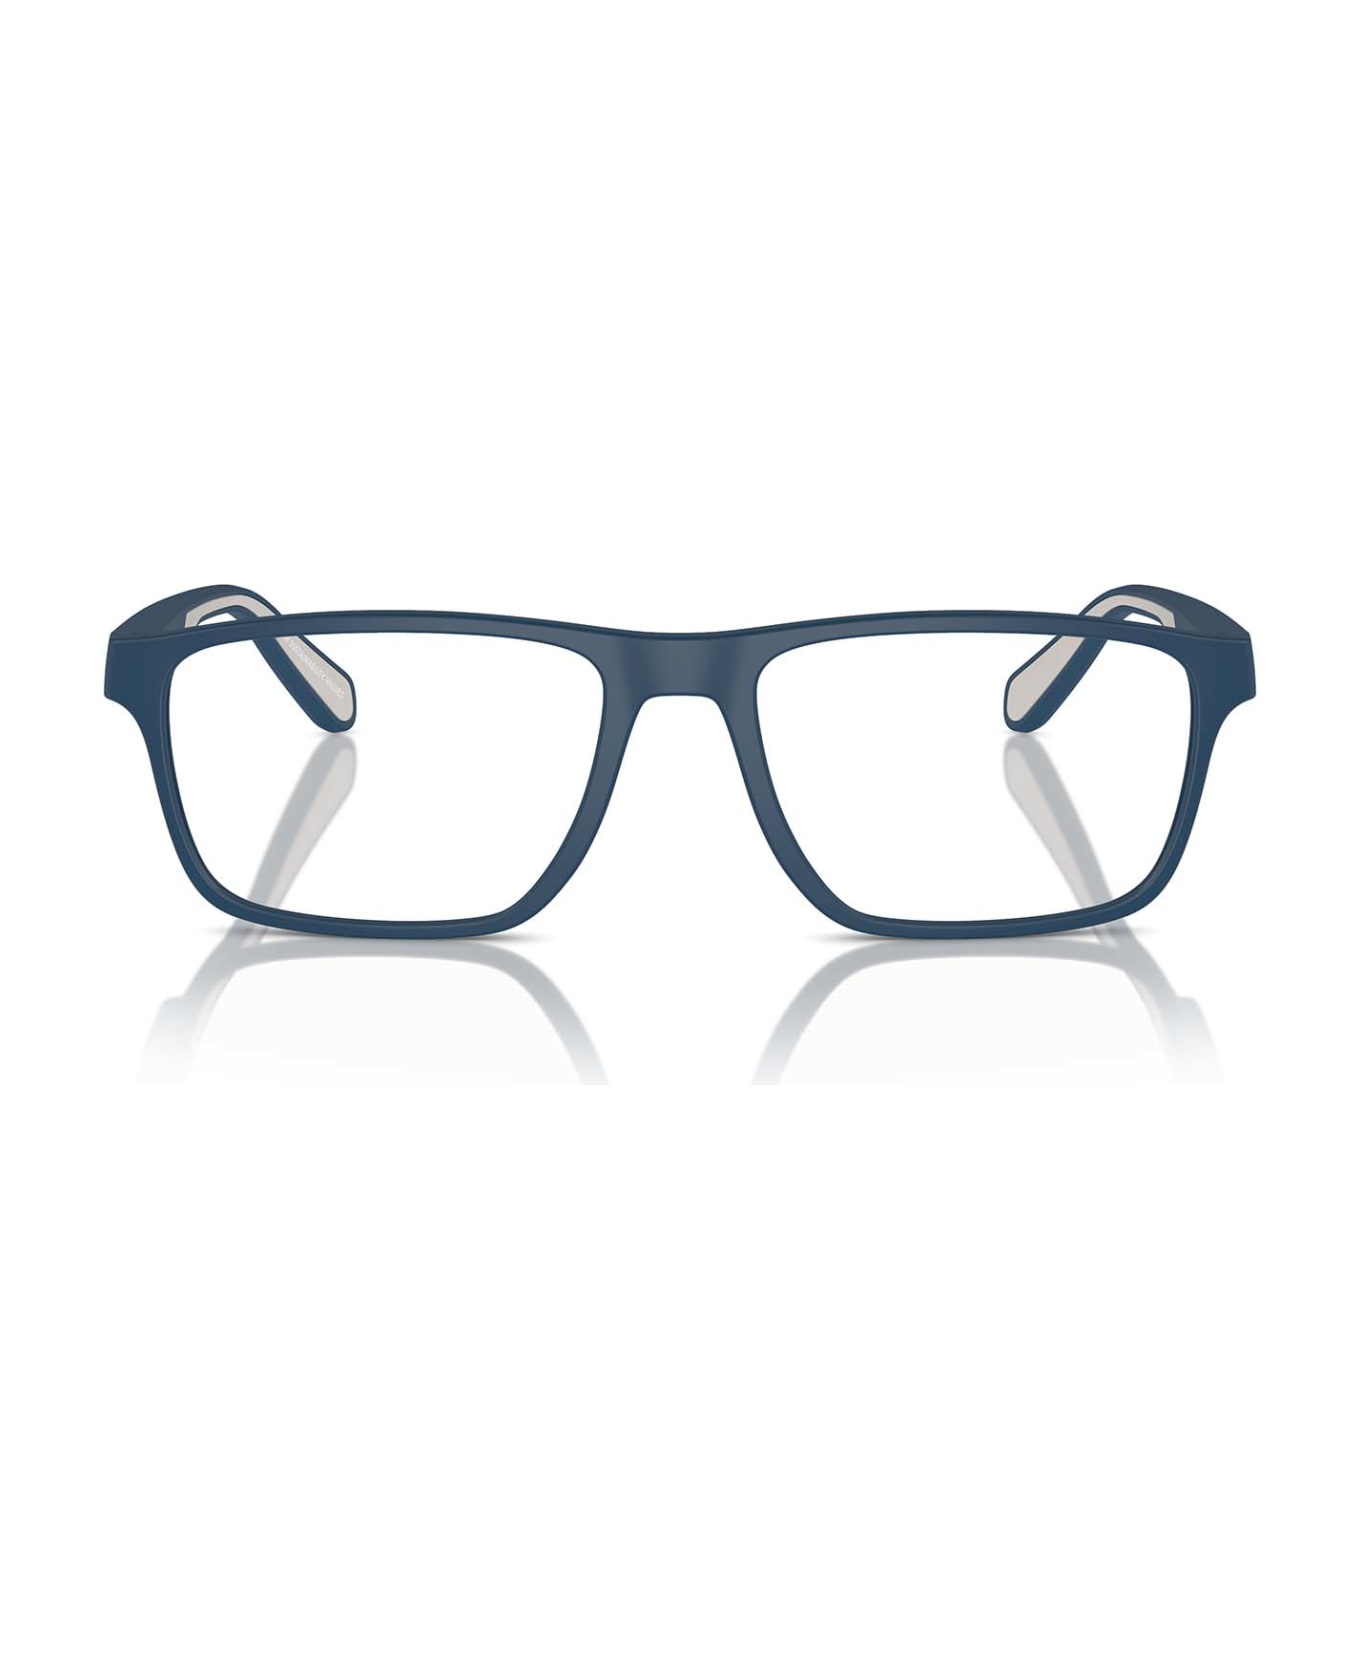 Emporio Armani Ea3233 Matte Blue Glasses - Matte Blue